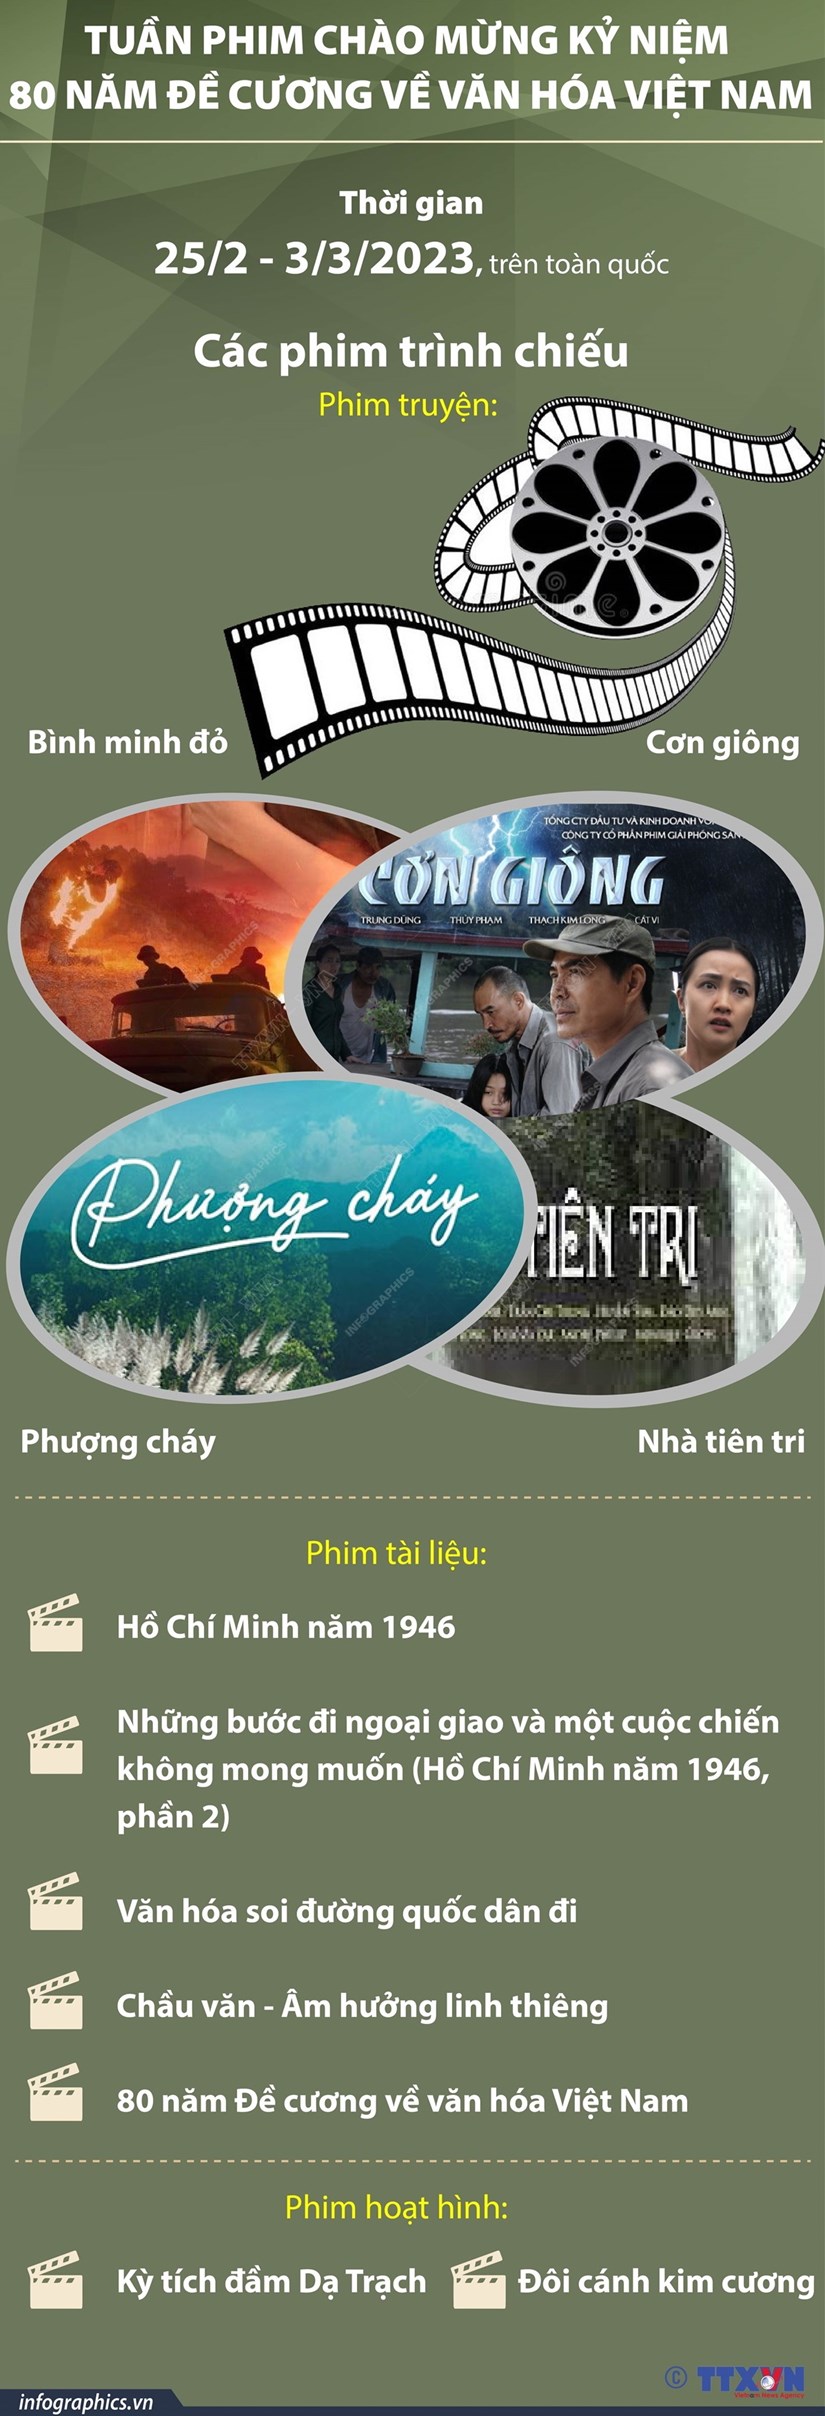 Nhiều hoạt động đặc sắc kỉ niệm 80 năm Đề cương về văn hóa Việt Nam - Ảnh 4.